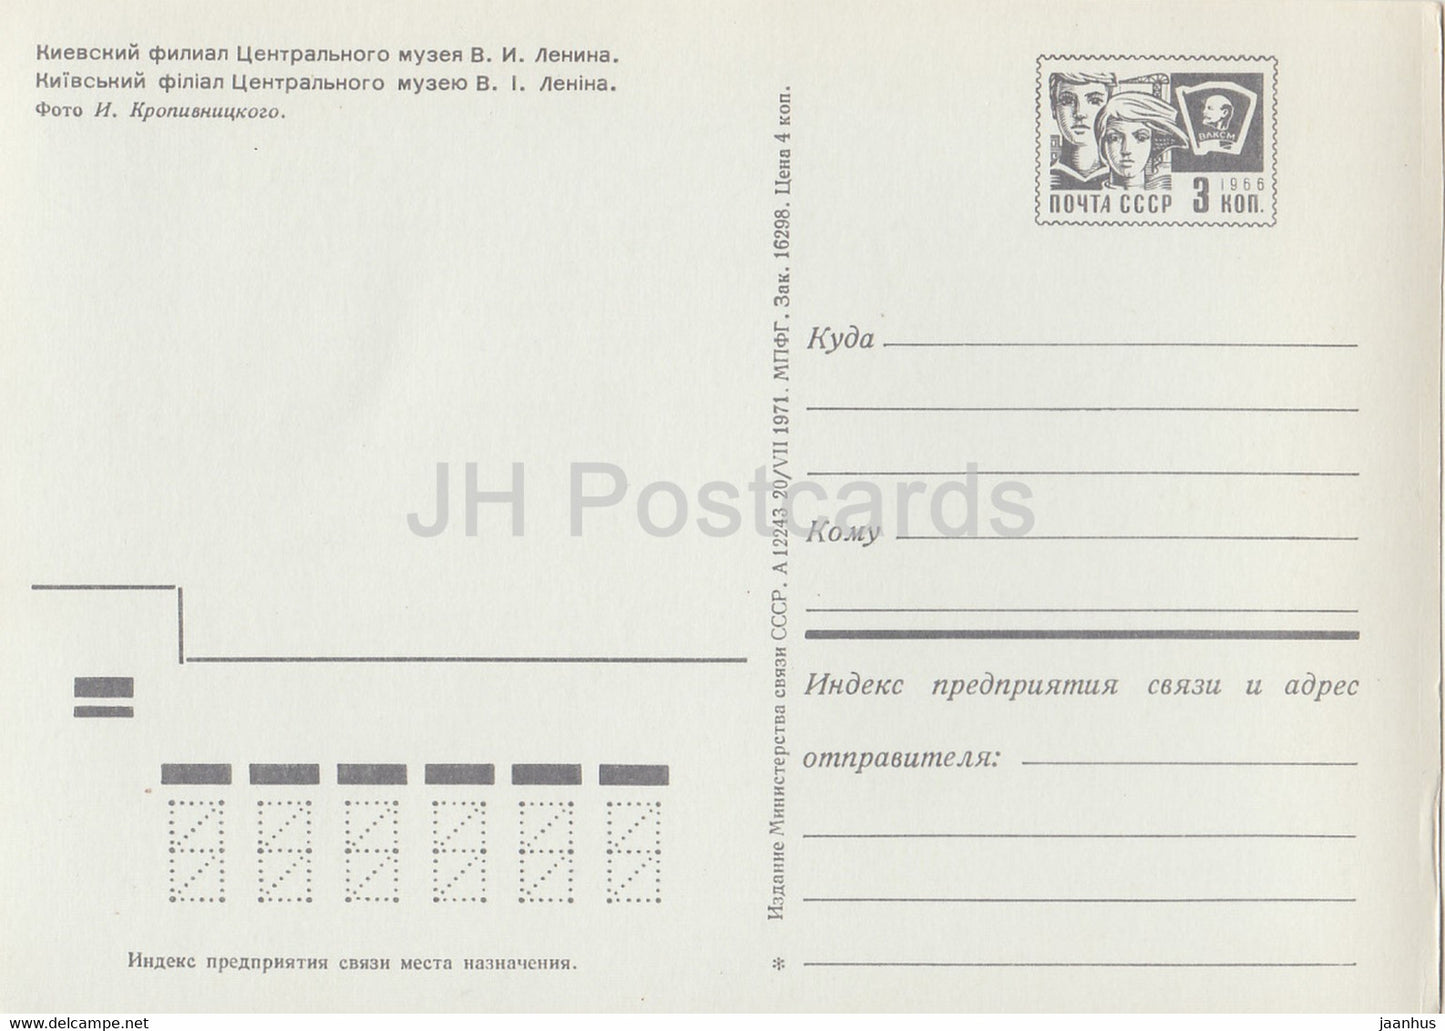 Kyiv - Kiev - Central Lenin Museum - postal stationery - 1971 - Ukraine USSR - unused